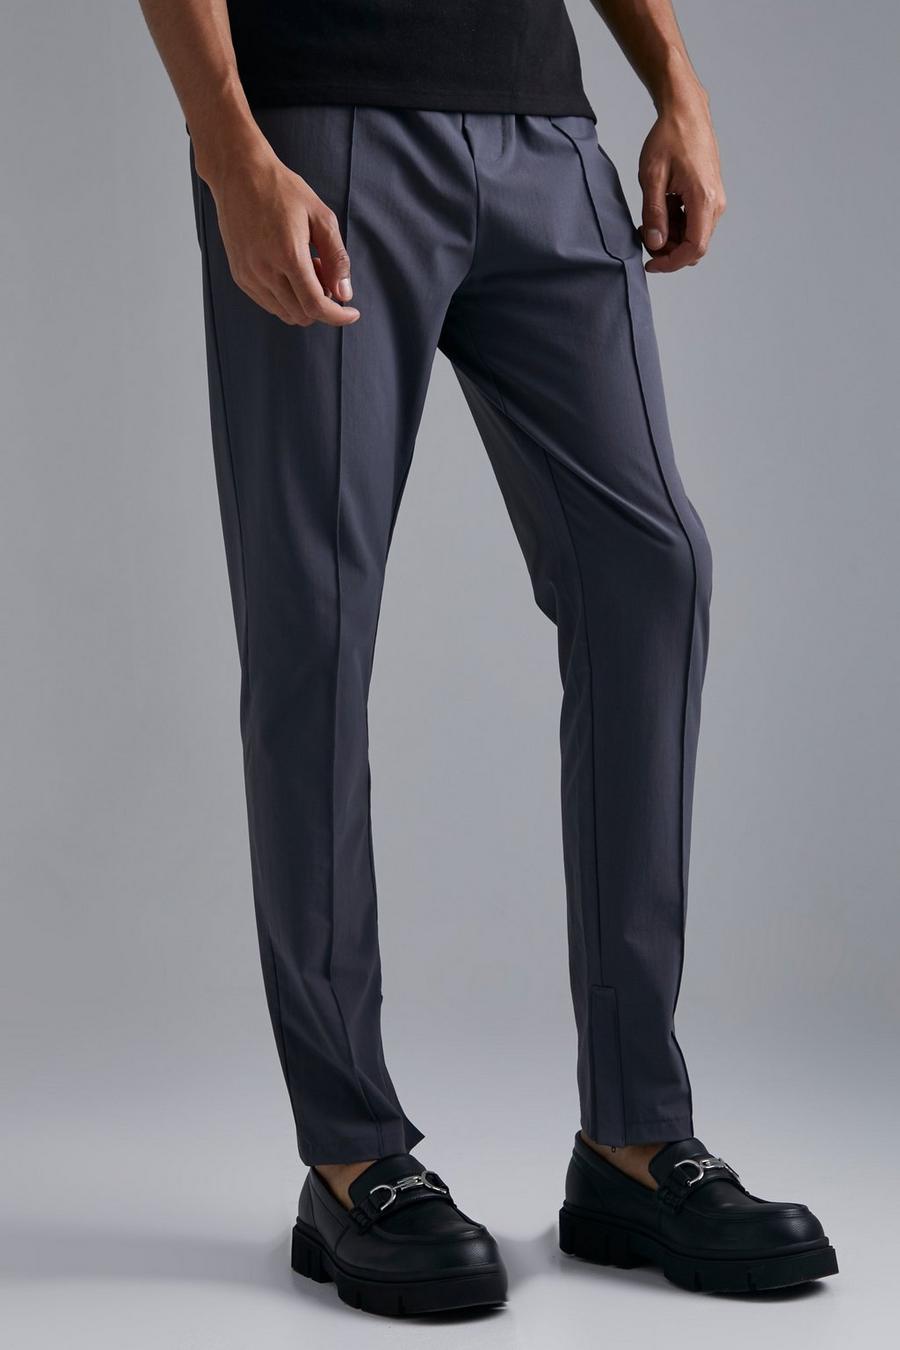 Pantalón Tall ajustado elástico en 4 direcciones con alforza, Dark grey gris